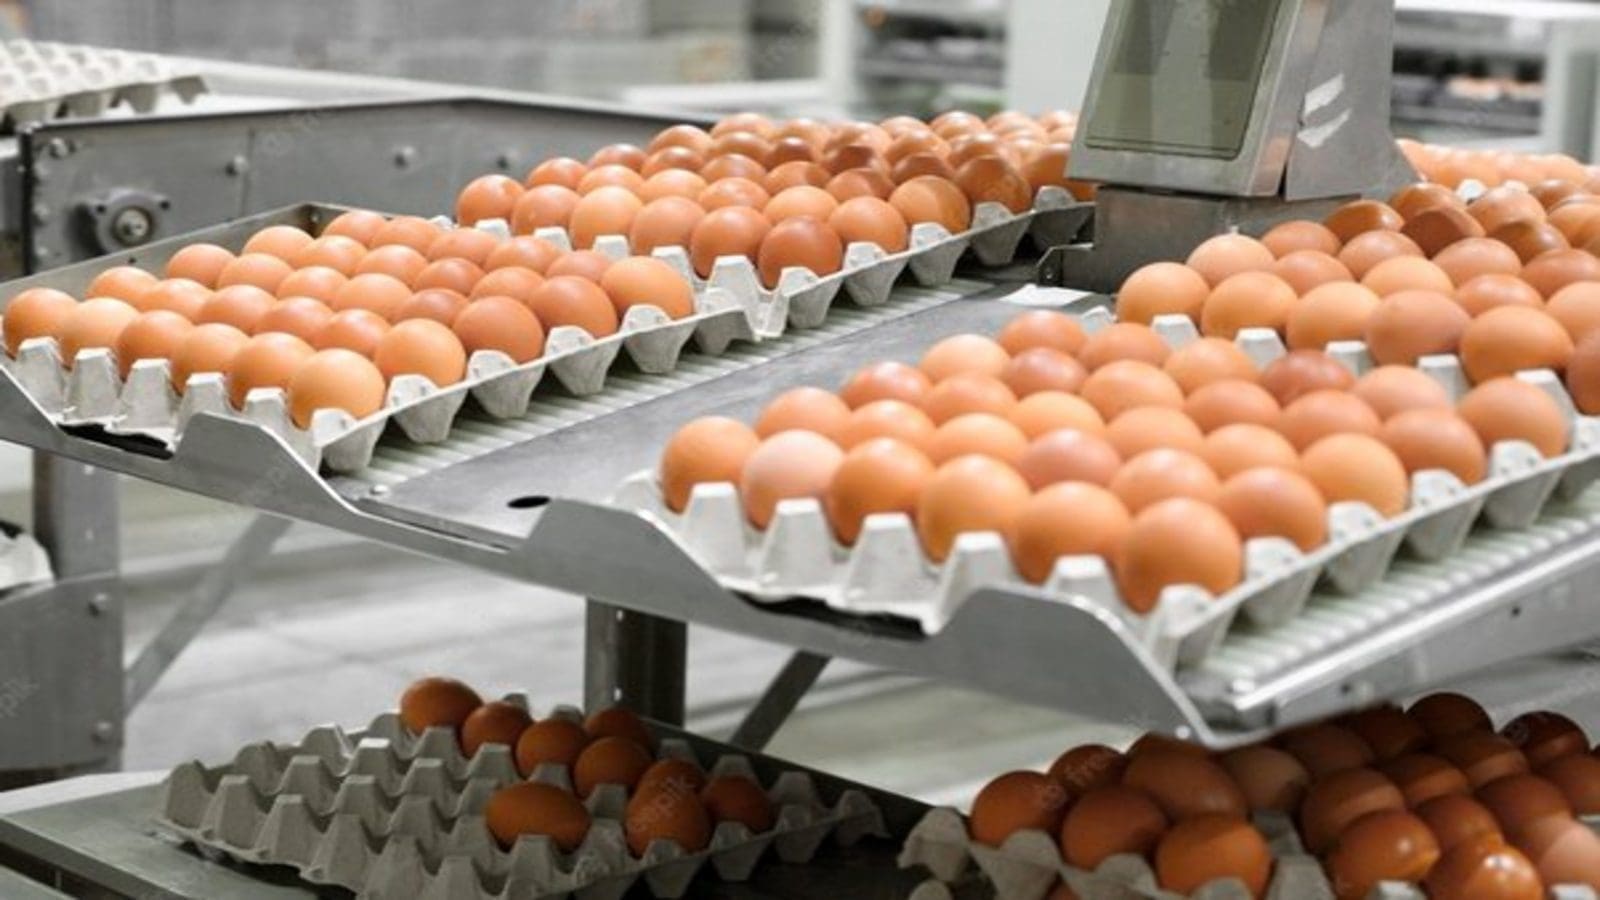 LDC eyes Groupe Avril’s egg brand to strengthen position in free-range eggs